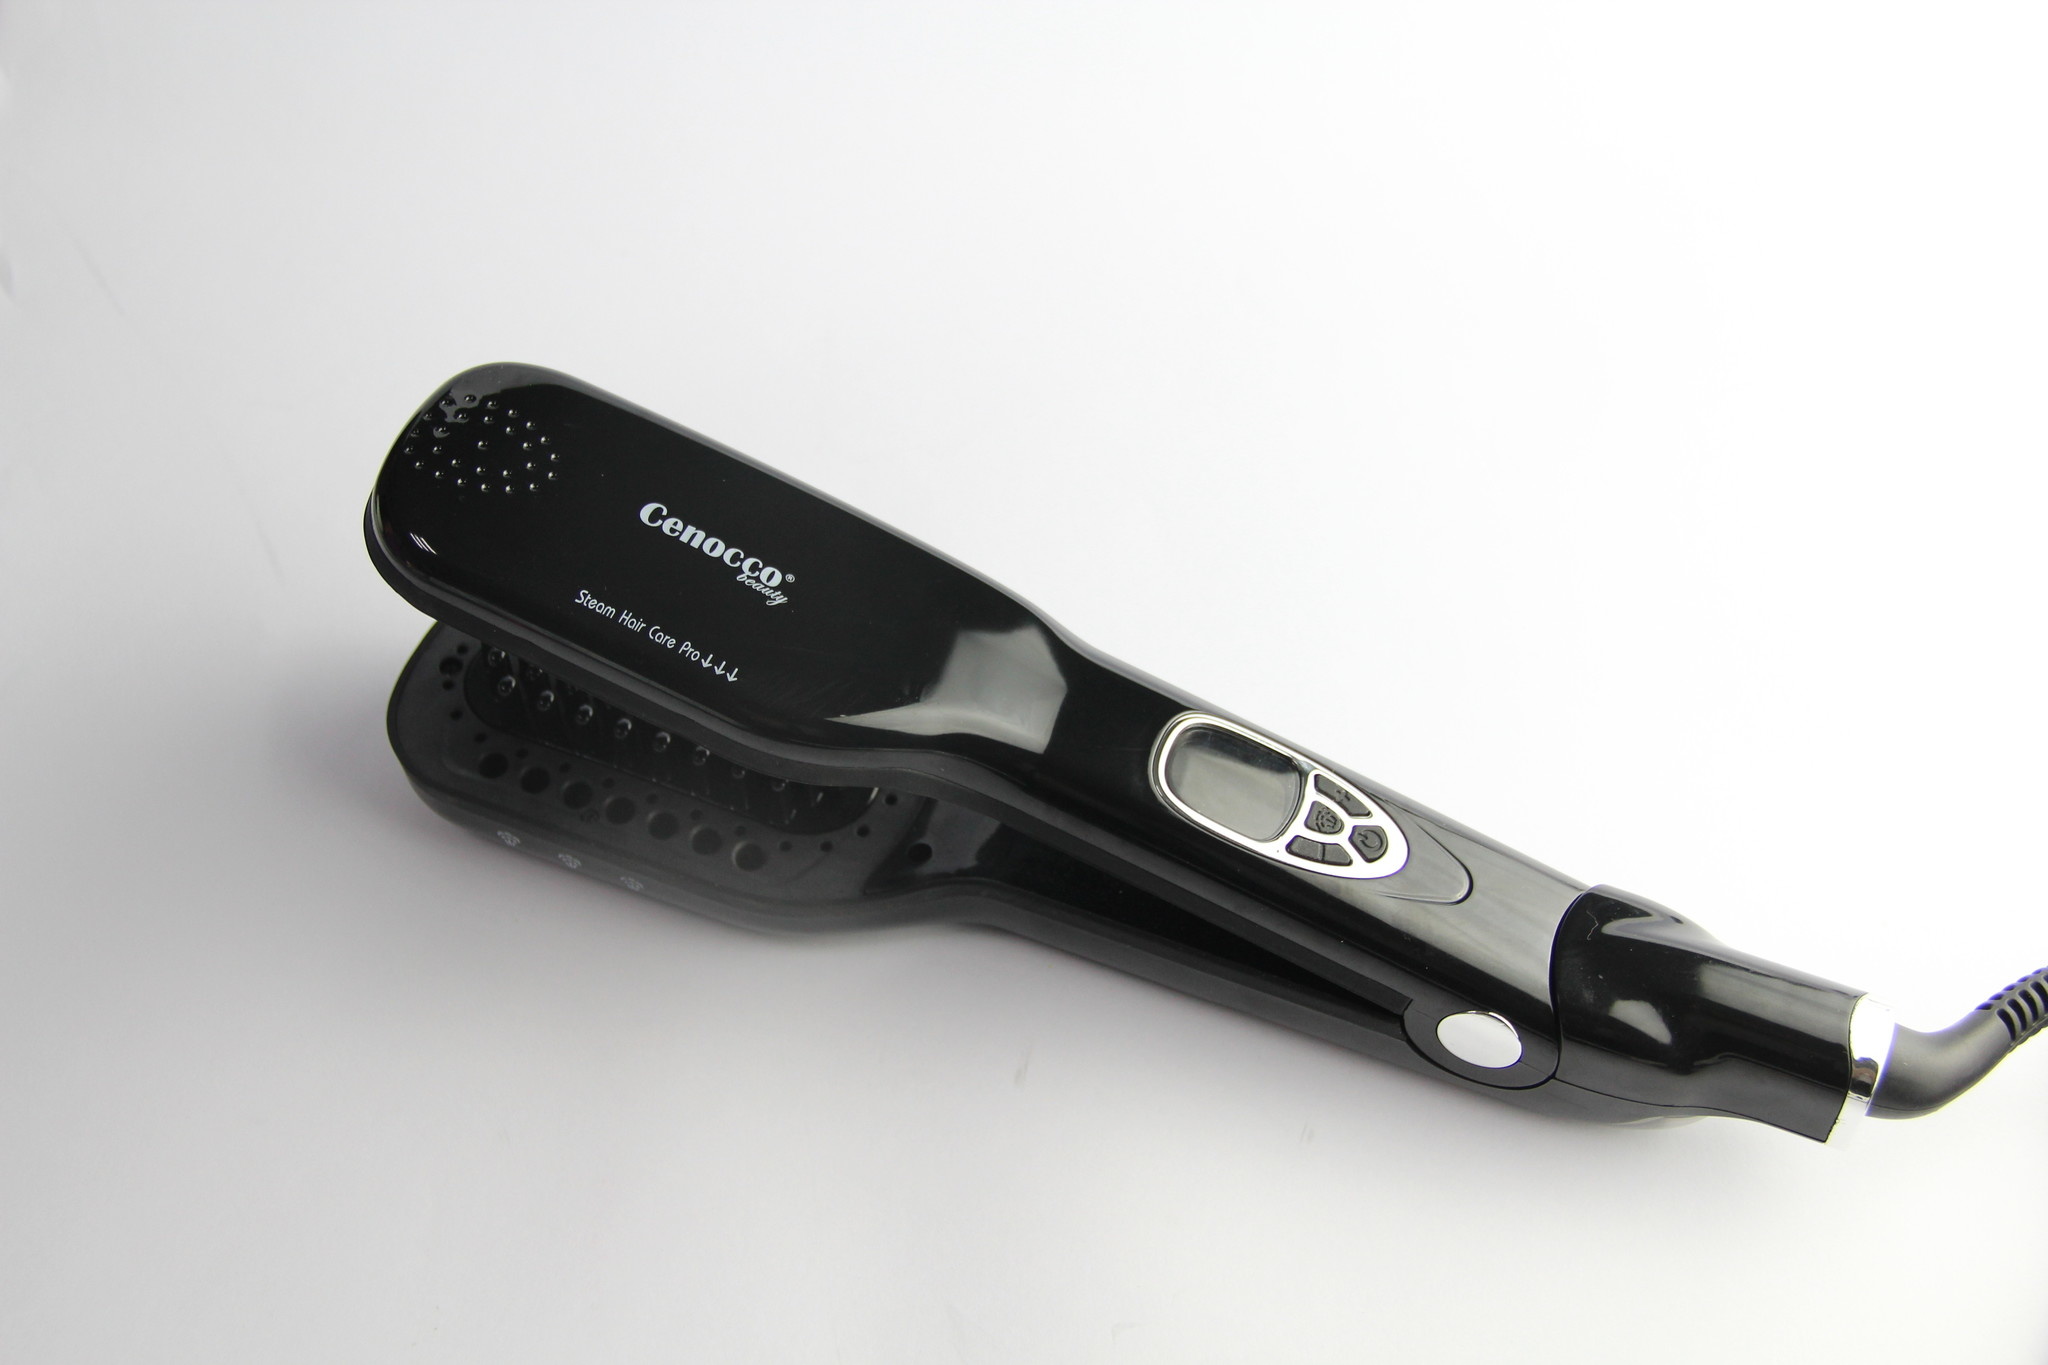 Cenocco CC-9014- Stoom borstel - Stijlborstel - Fohnborstel - voor alle haartypen - 5 standen - Max 230 °C - Zwart